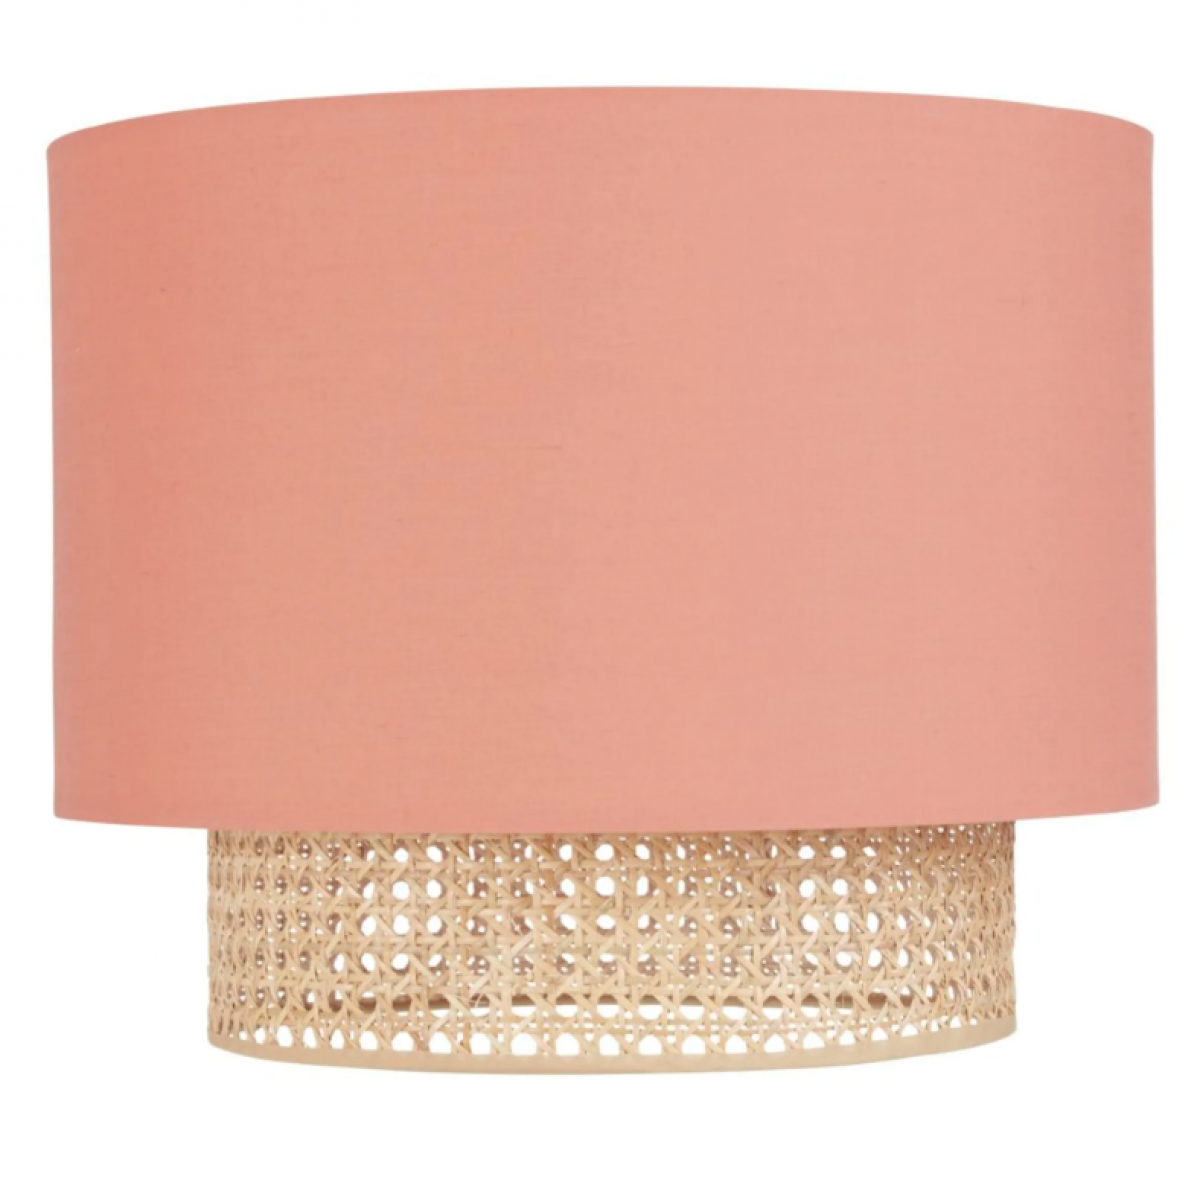 Roze lampenkap met rotan detail voor hanglamp